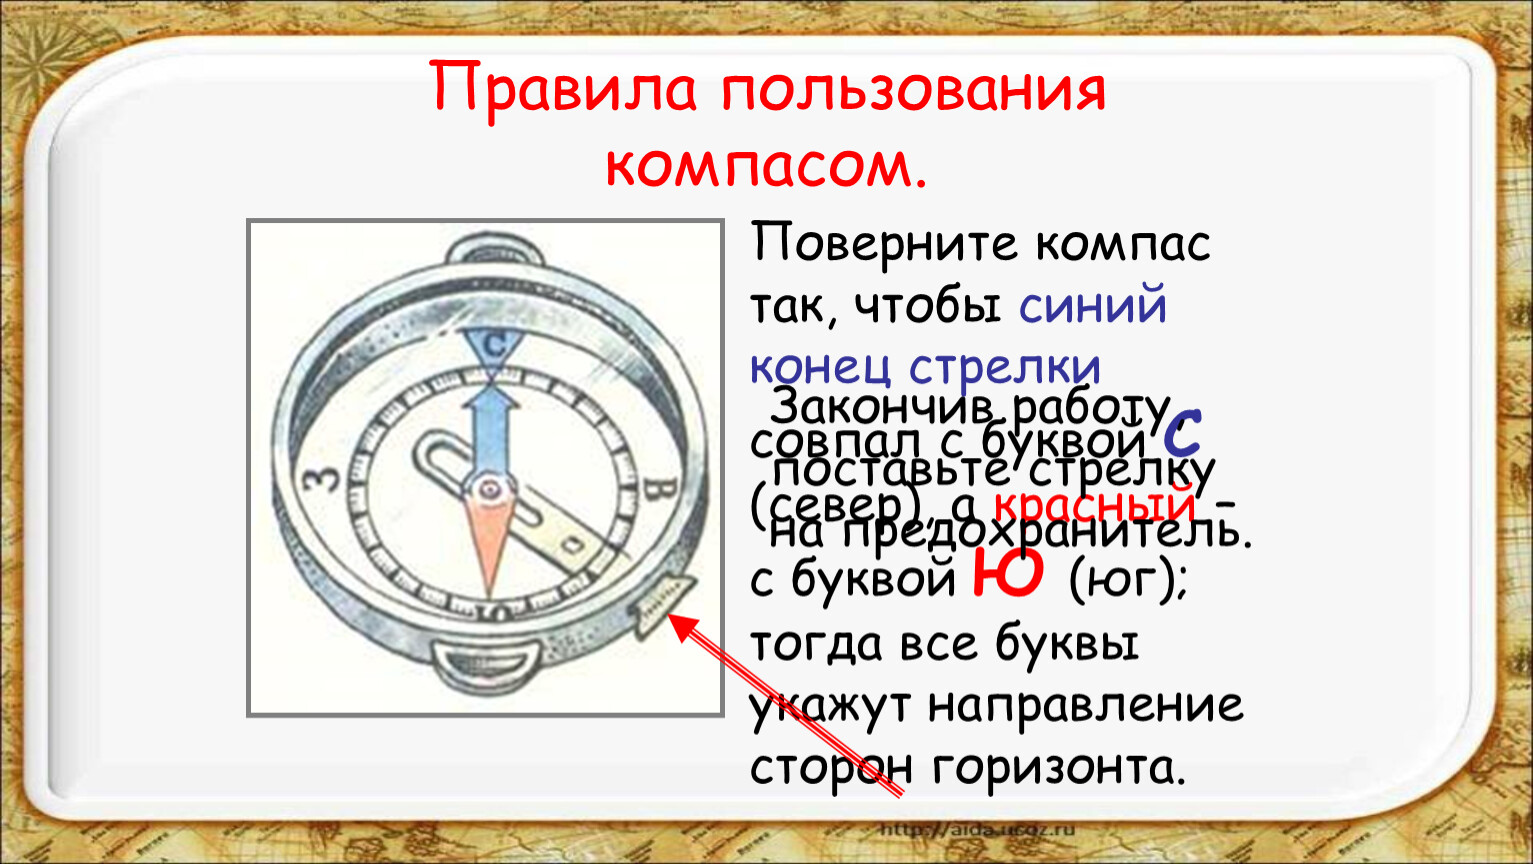 Почему стрелка компаса лишь приблизительно указывает направление. Правила пользования компасом. Ориентирование на местности. Компас с русскими буквами. Правила использования компаса.